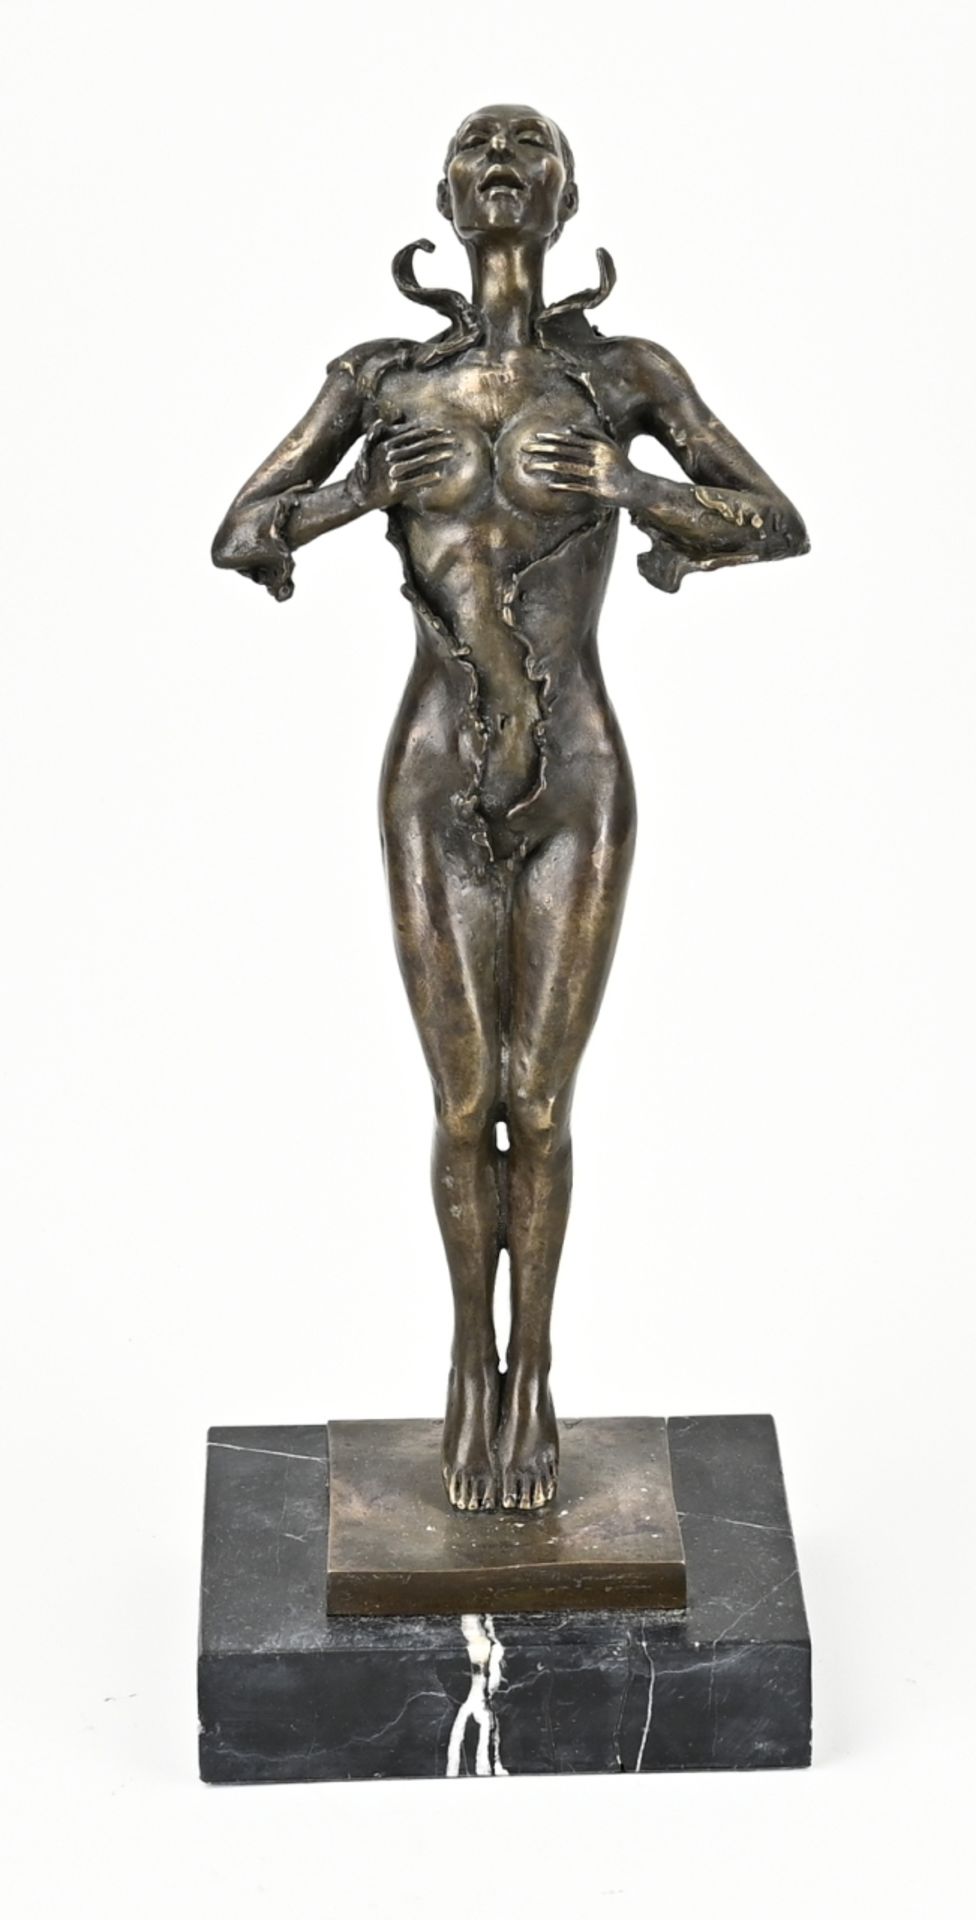 Erotic bronze figure, Woman in catsuit